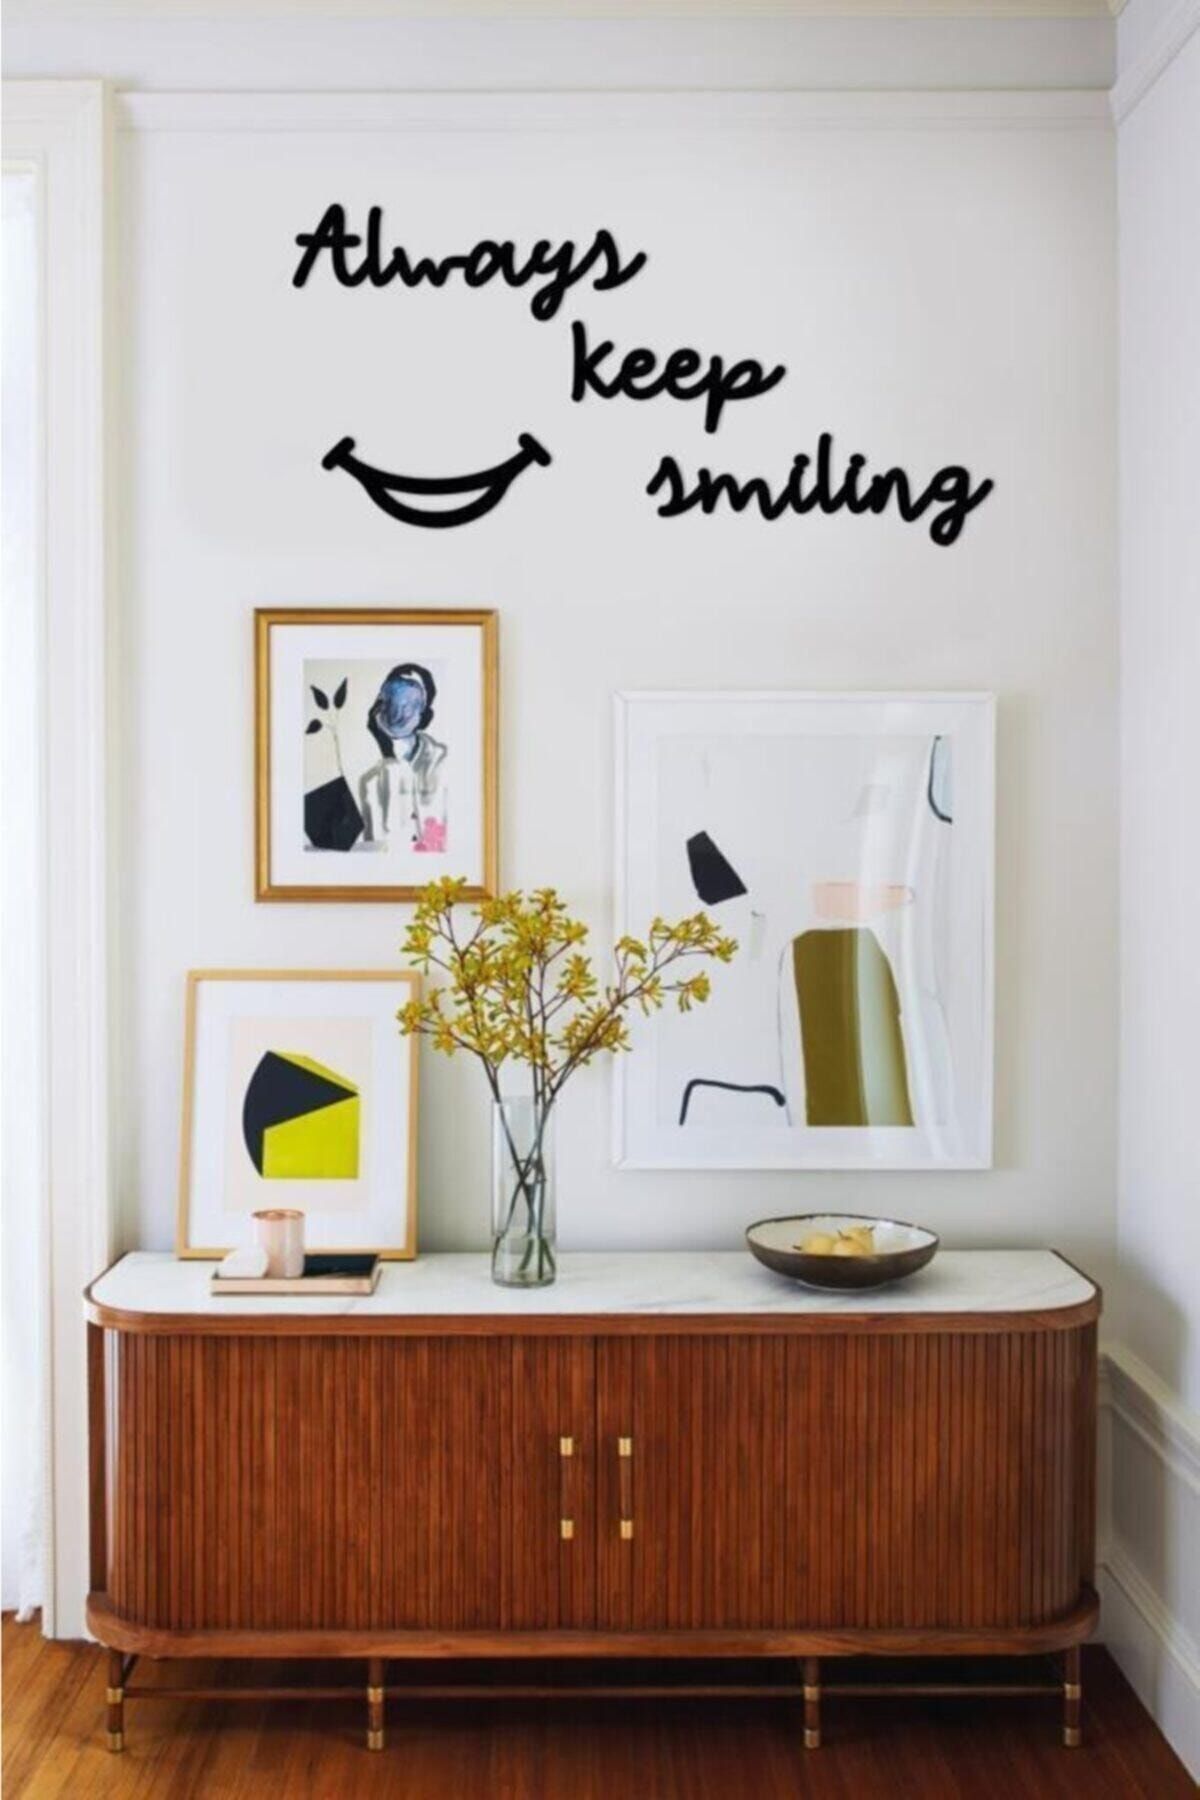 Hellove Always Keep Smiling Duvar Yazısı Dekoratif Tablo Ahşap Duvar Yazısı